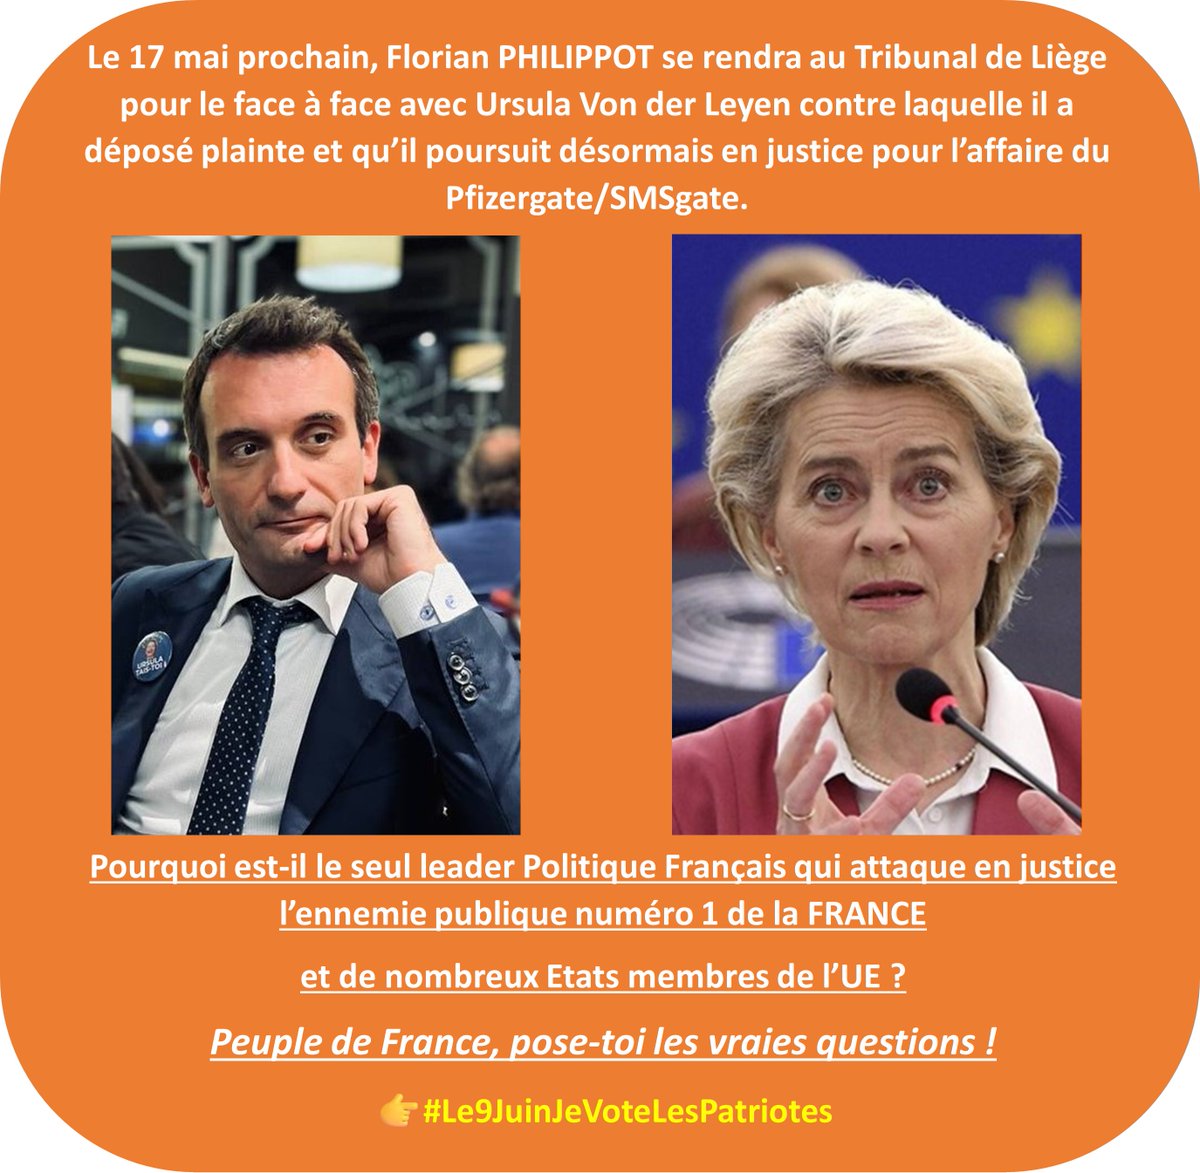 ✊CE SERA LE 17 MAI PROCHAIN !✊
🚨Peuple de FRANCE, rejoins le combat de tes défenseurs ! ✊
👉#LEuropeÇaSuffit
👉#Le9JuinJeVoteLesPatriotes🇫🇷